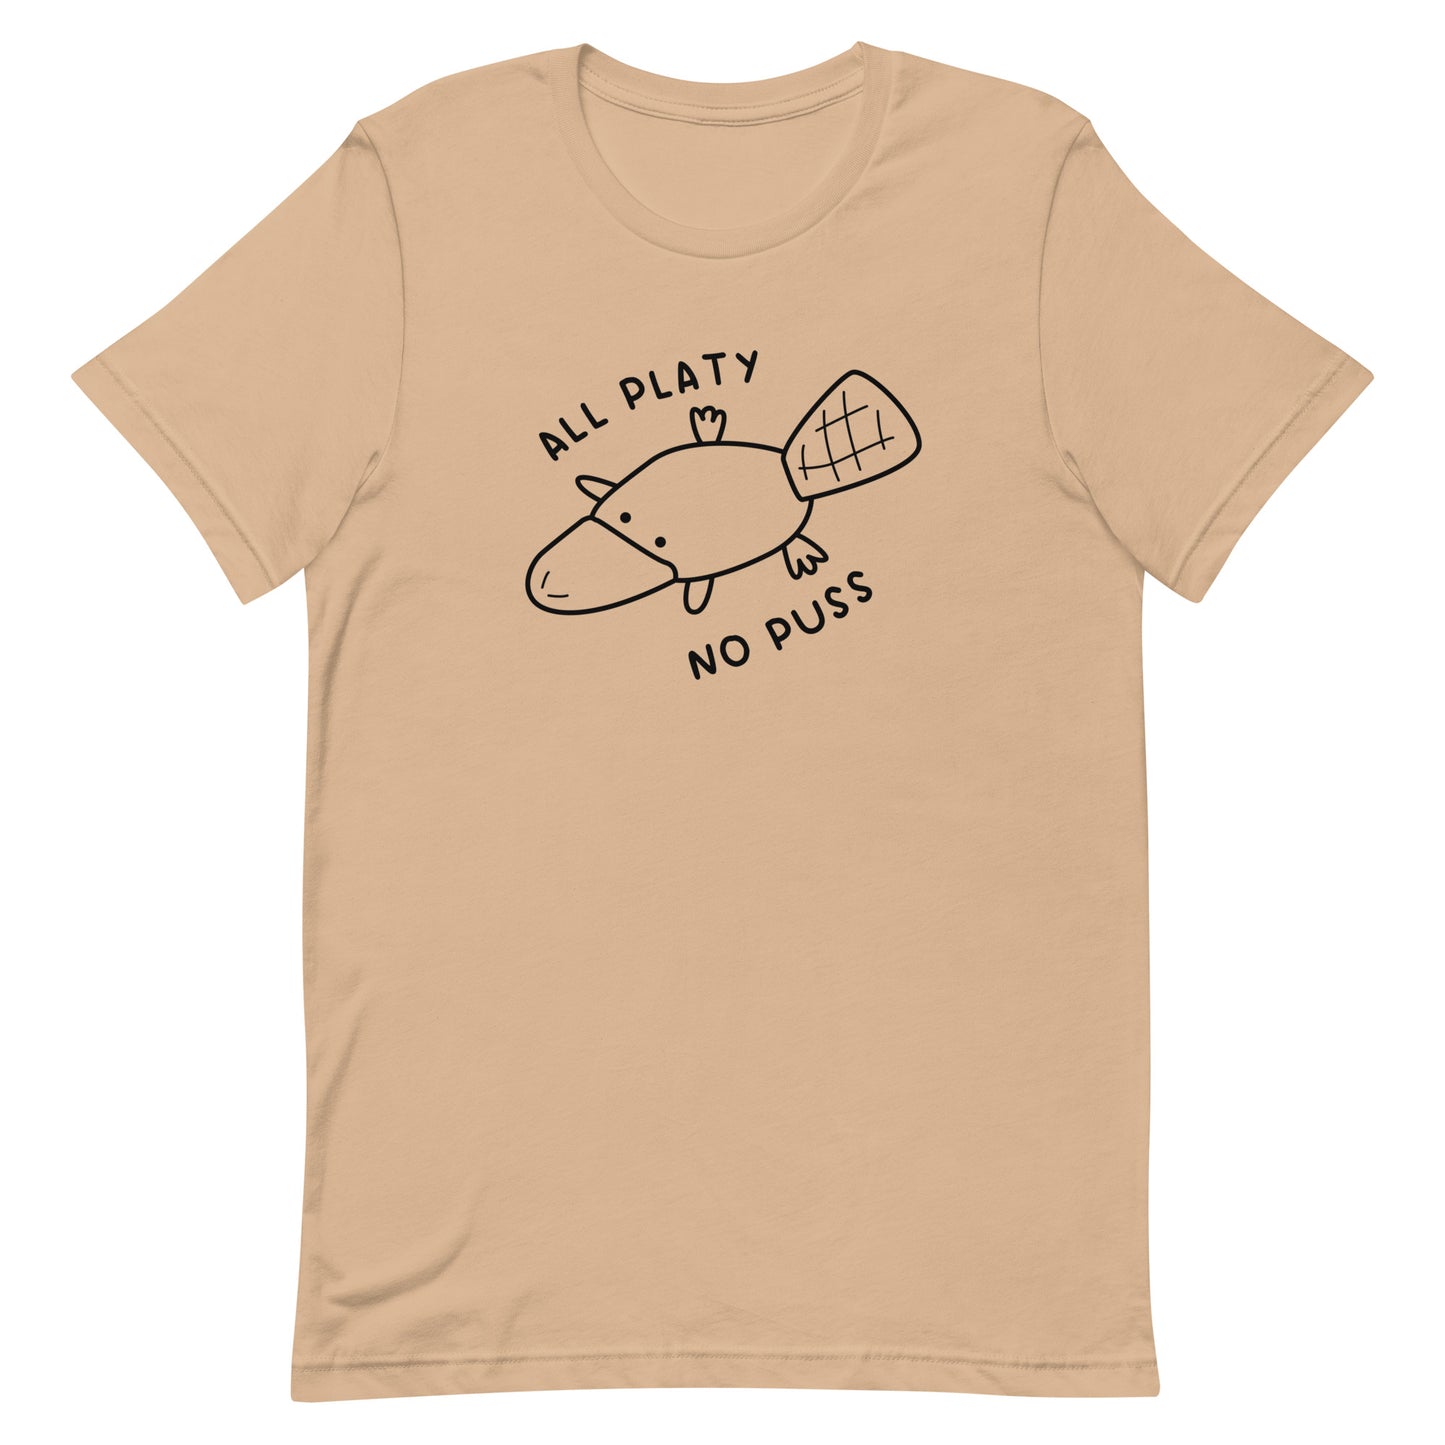 All Platy, No Puss Unisex t-shirt